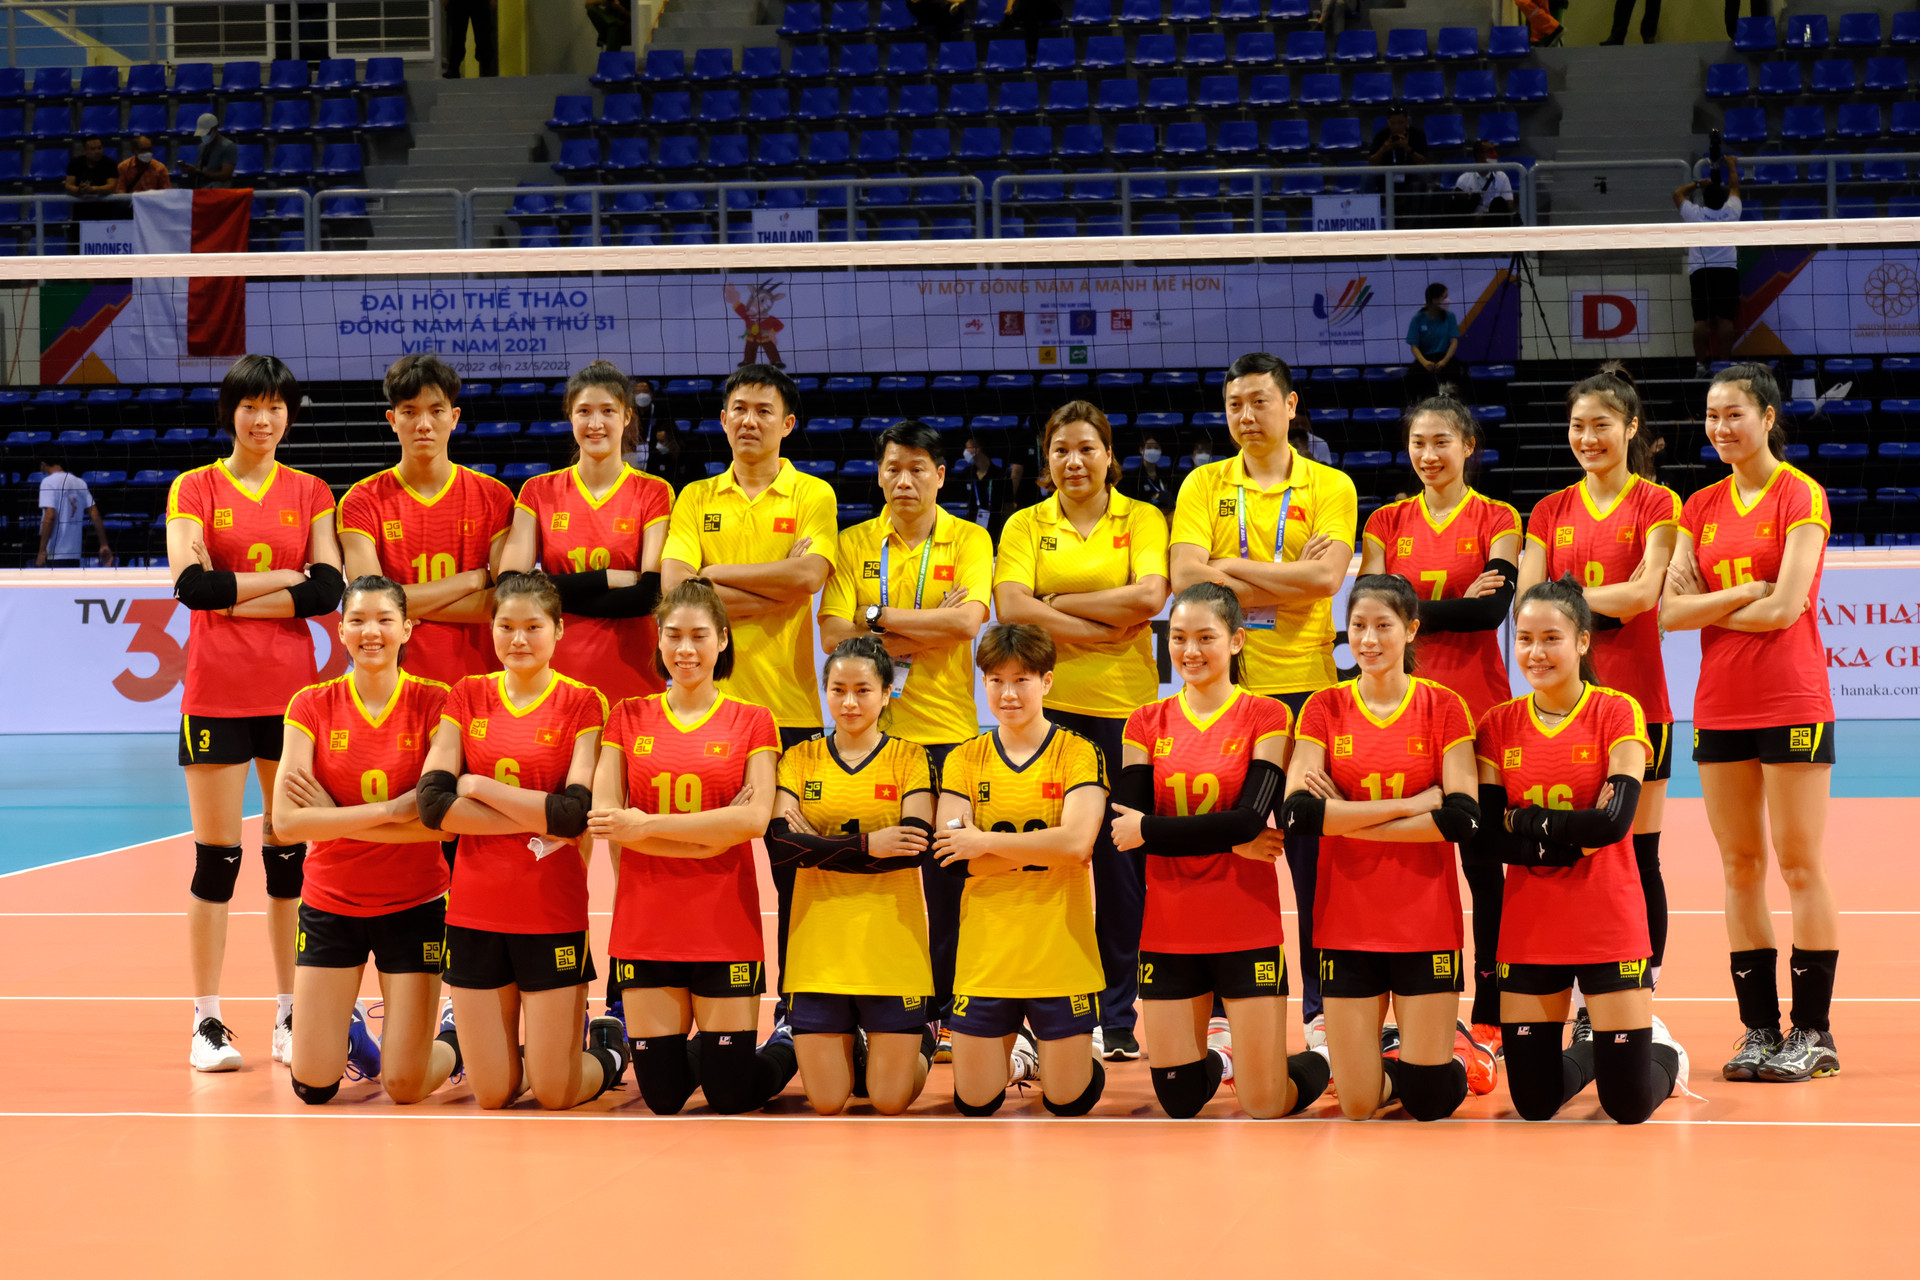 Chốt danh sách đội tuyển bóng chuyền nữ Việt Nam tham dự ASIAD 19